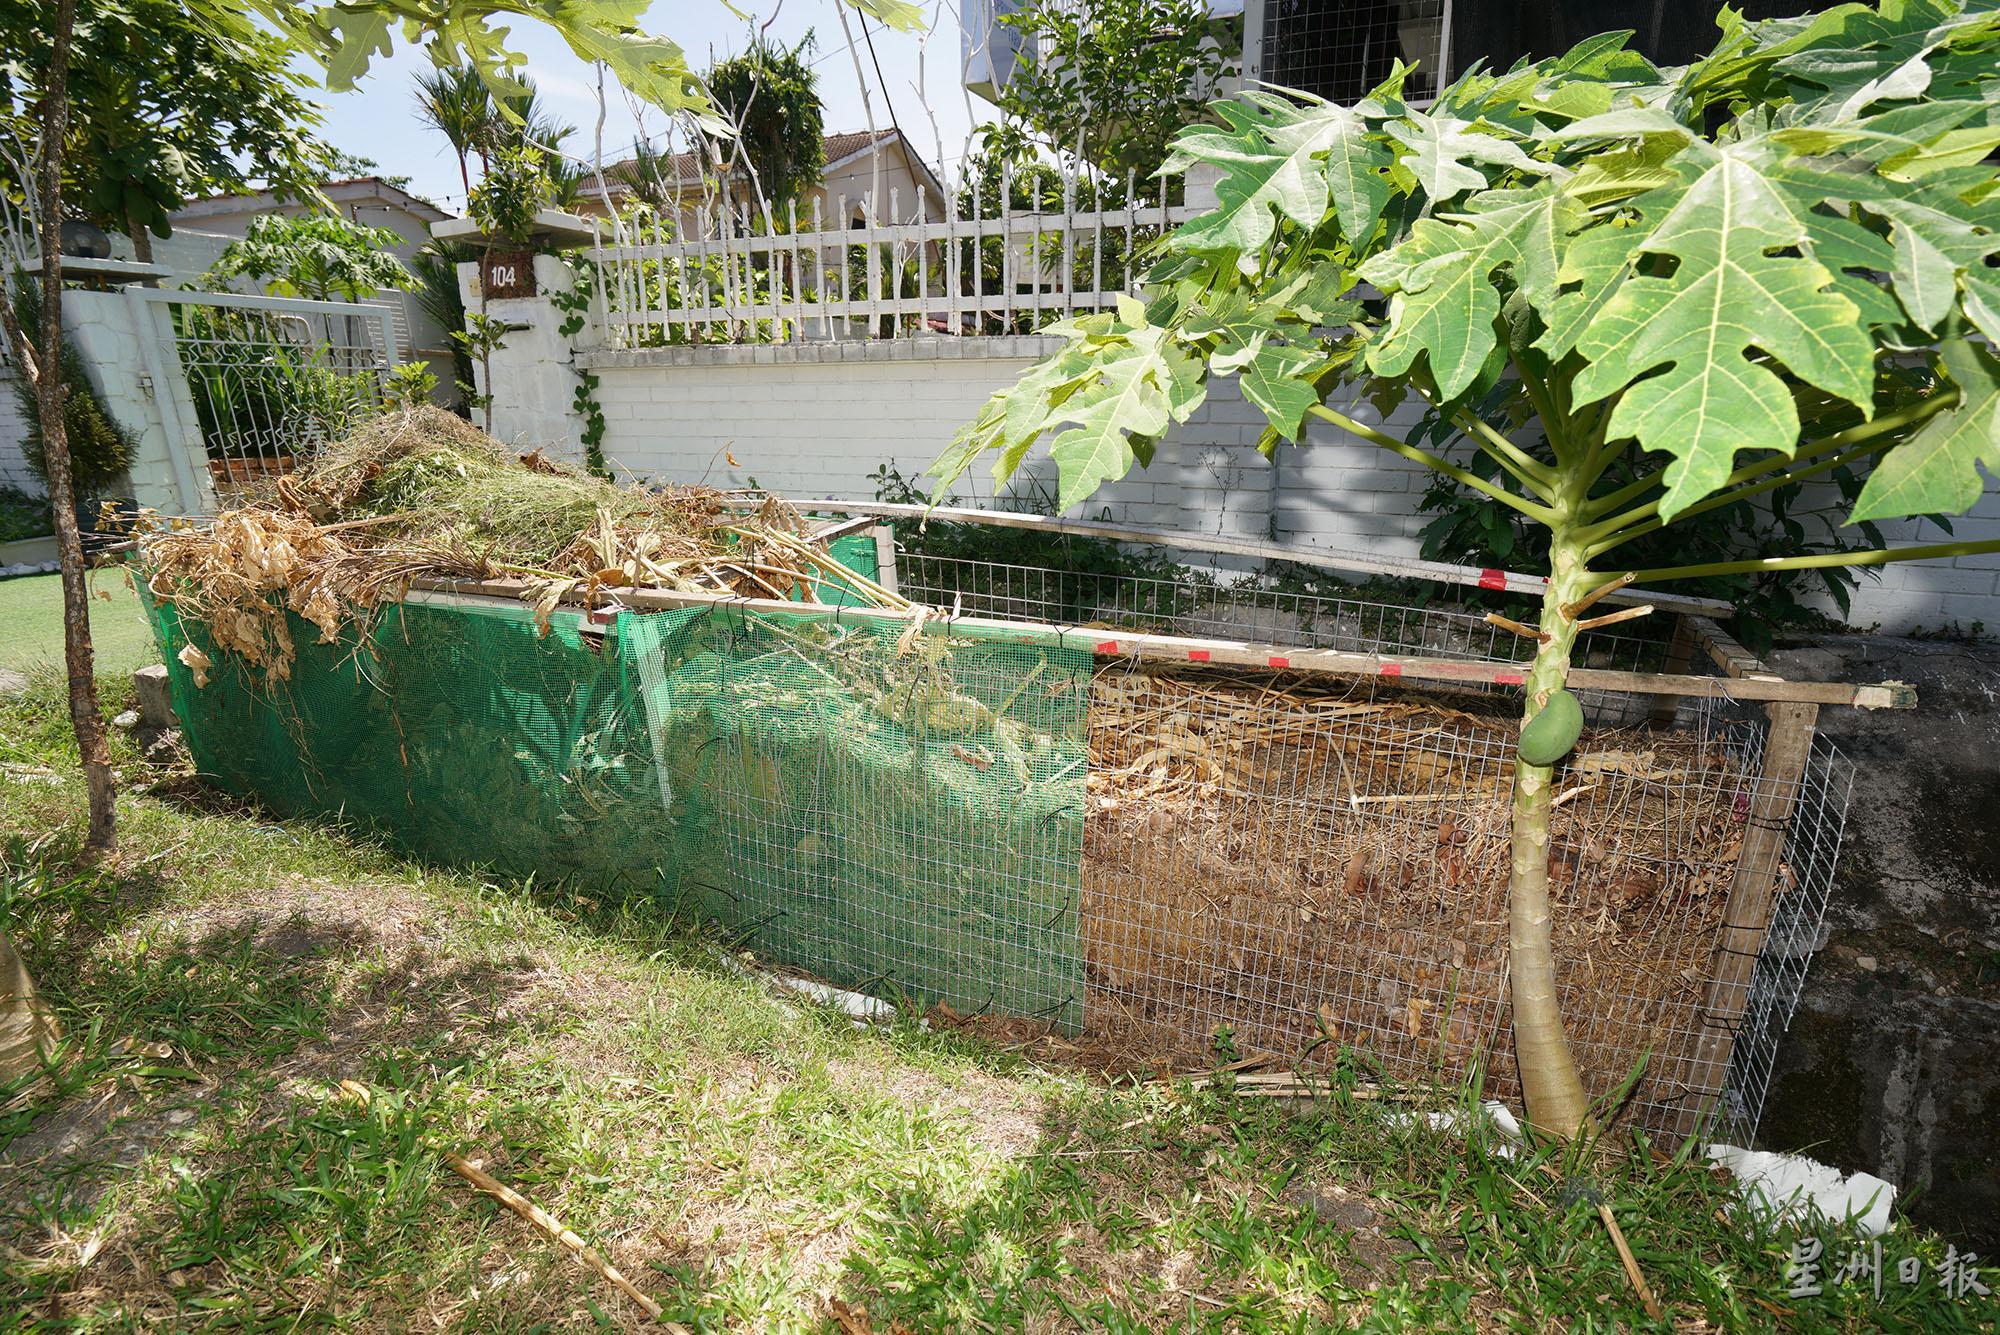 帕特使用铁网围成两个格子用于存放园艺垃圾，待分解后便可作为有机肥。

